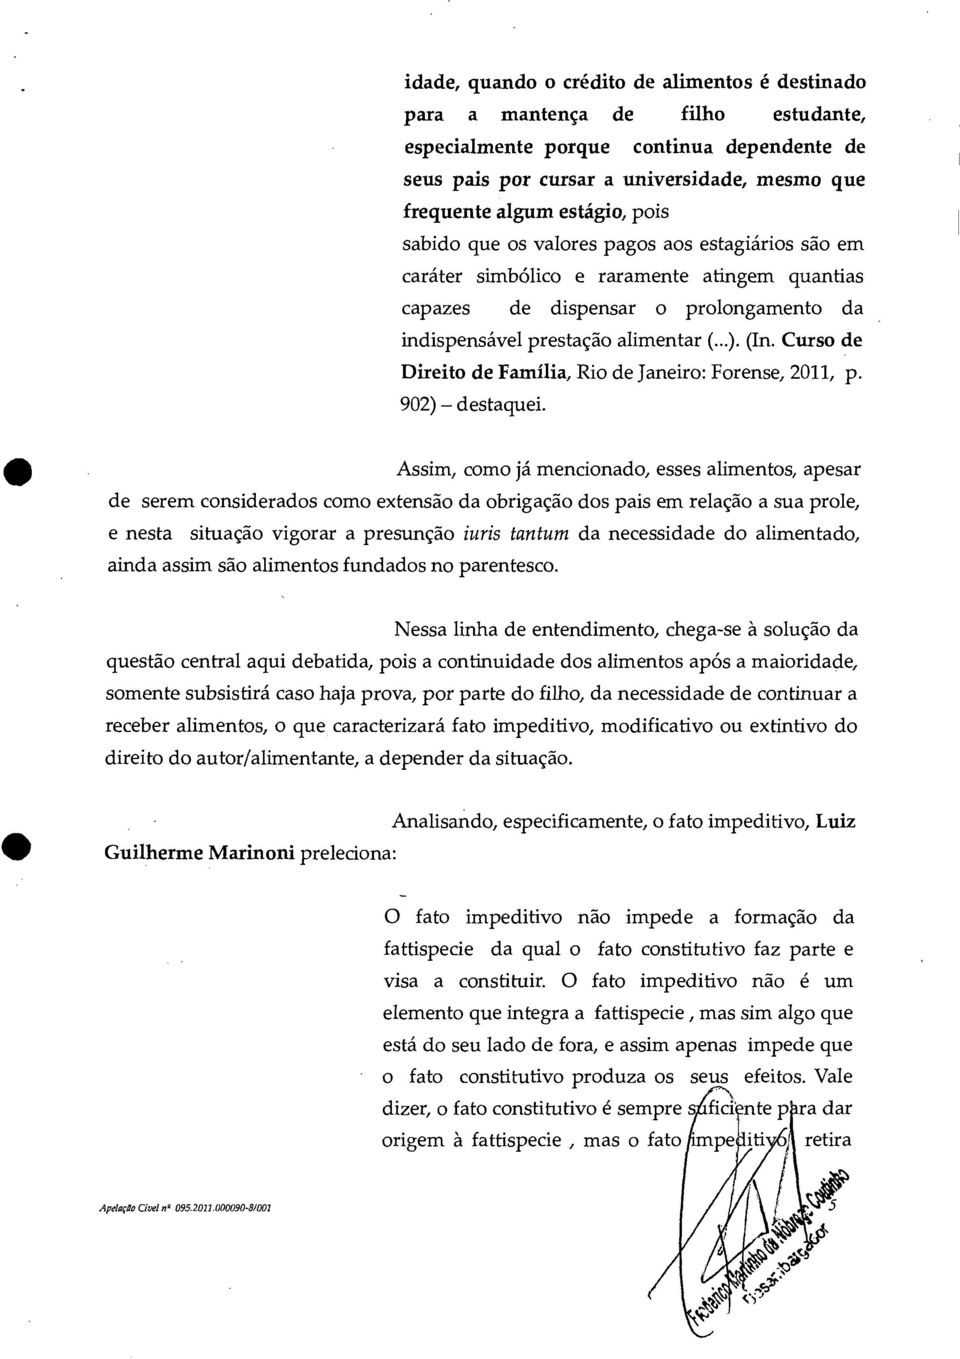 Curso de Direito de Família, Rio de Janeiro: Forense, 2011, p. 902) destaquei.